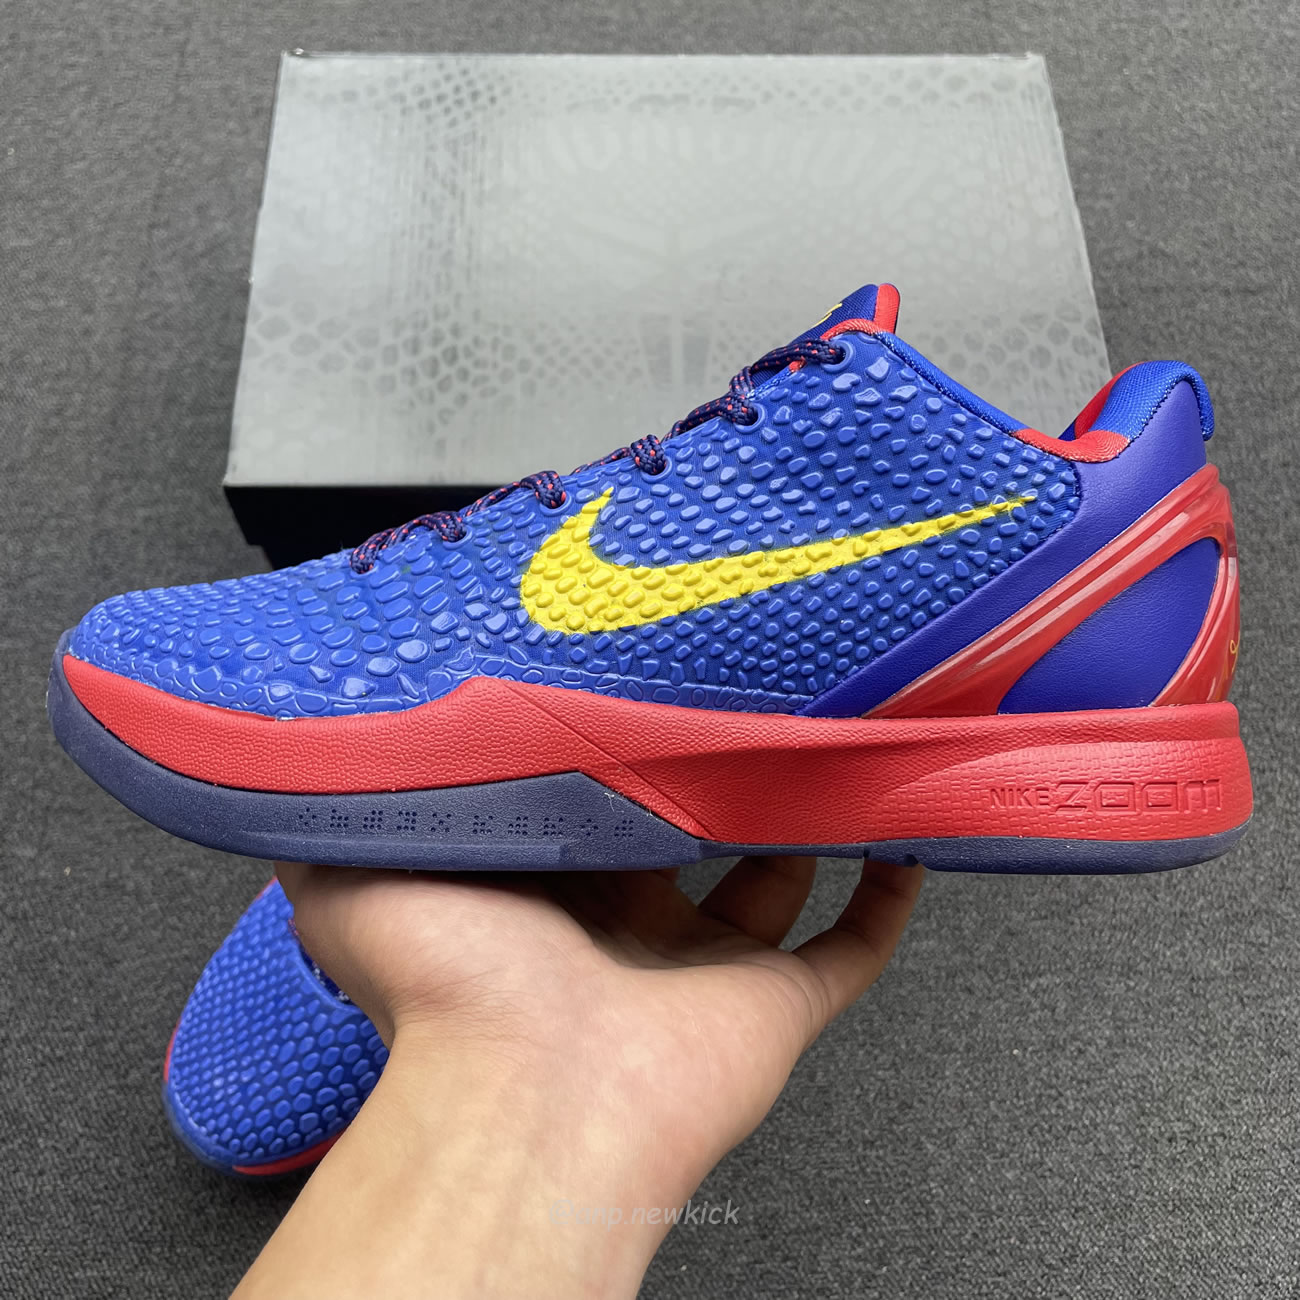 Nike Kobe 6 Fc Barcelona Home 429659 402 (9) - newkick.org